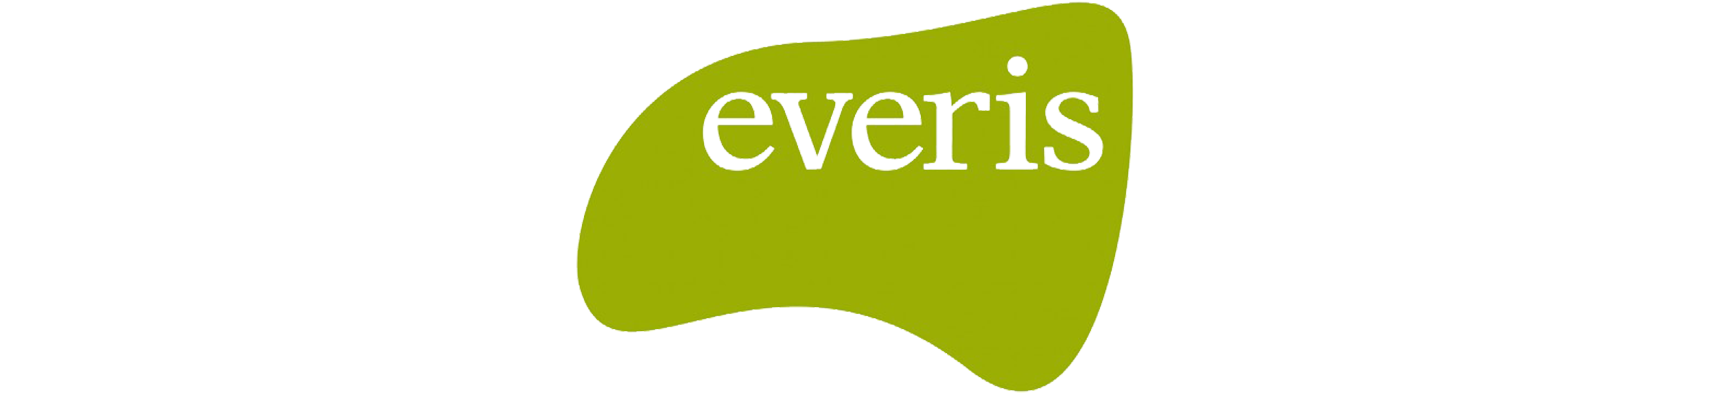 everis-684x513